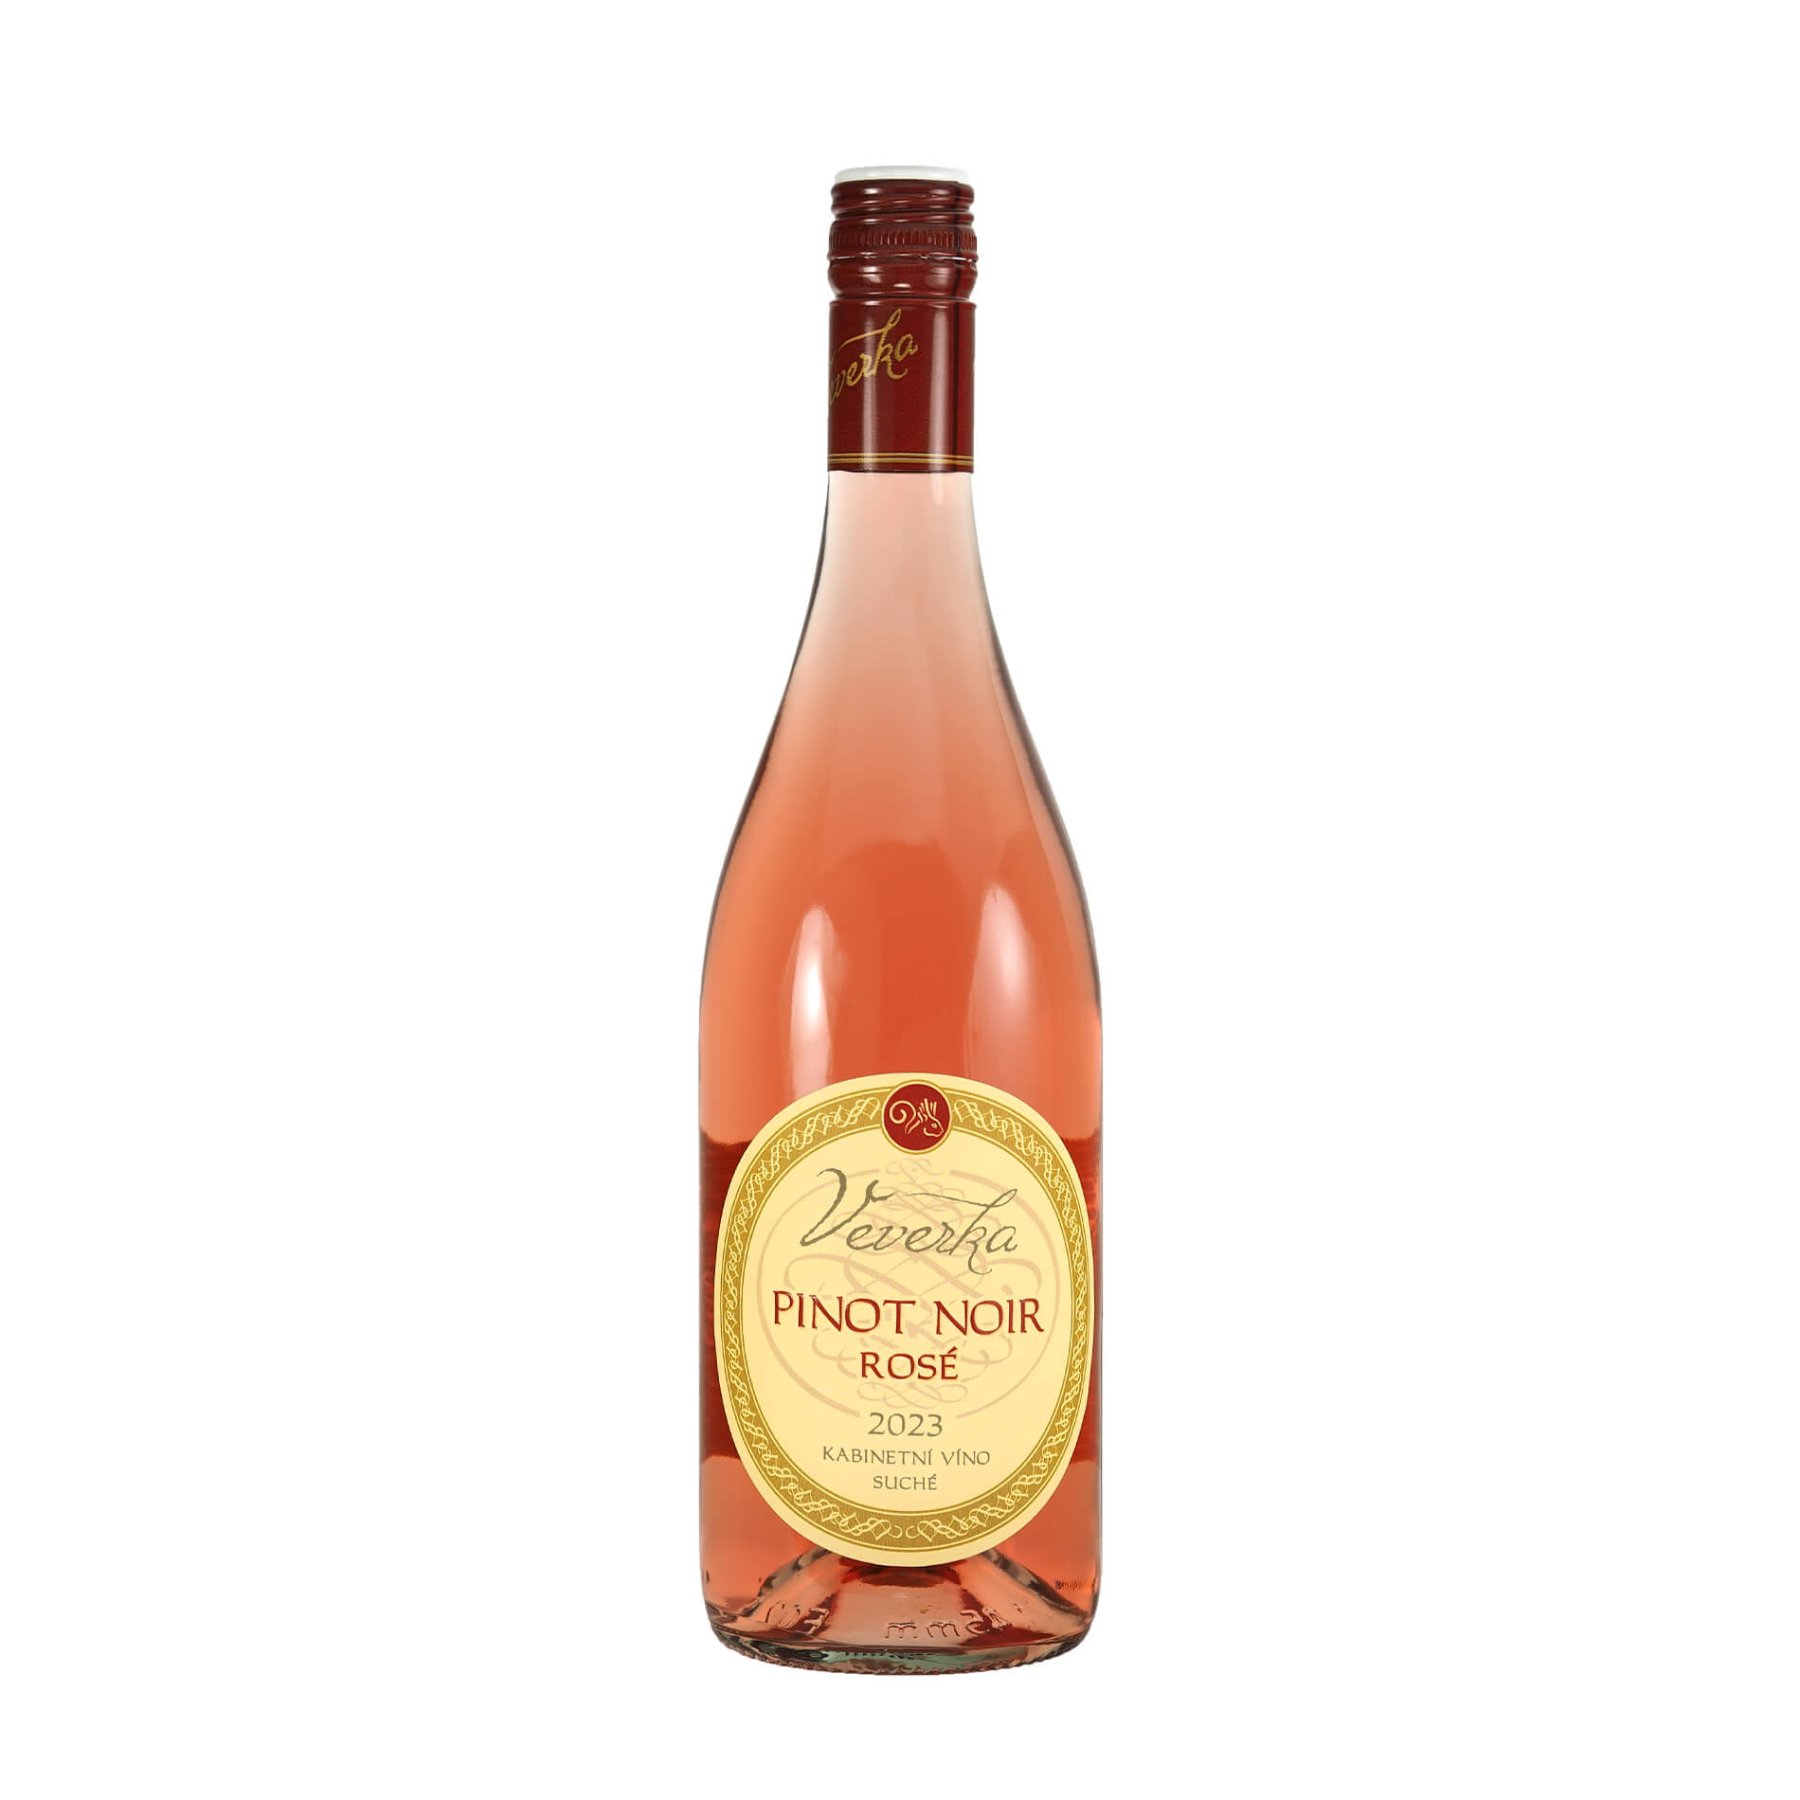 Pinot Noir Rosé ŠATRAPKY 2023 kabinetní víno LIBOR VEVERKA suché š. 05/2023